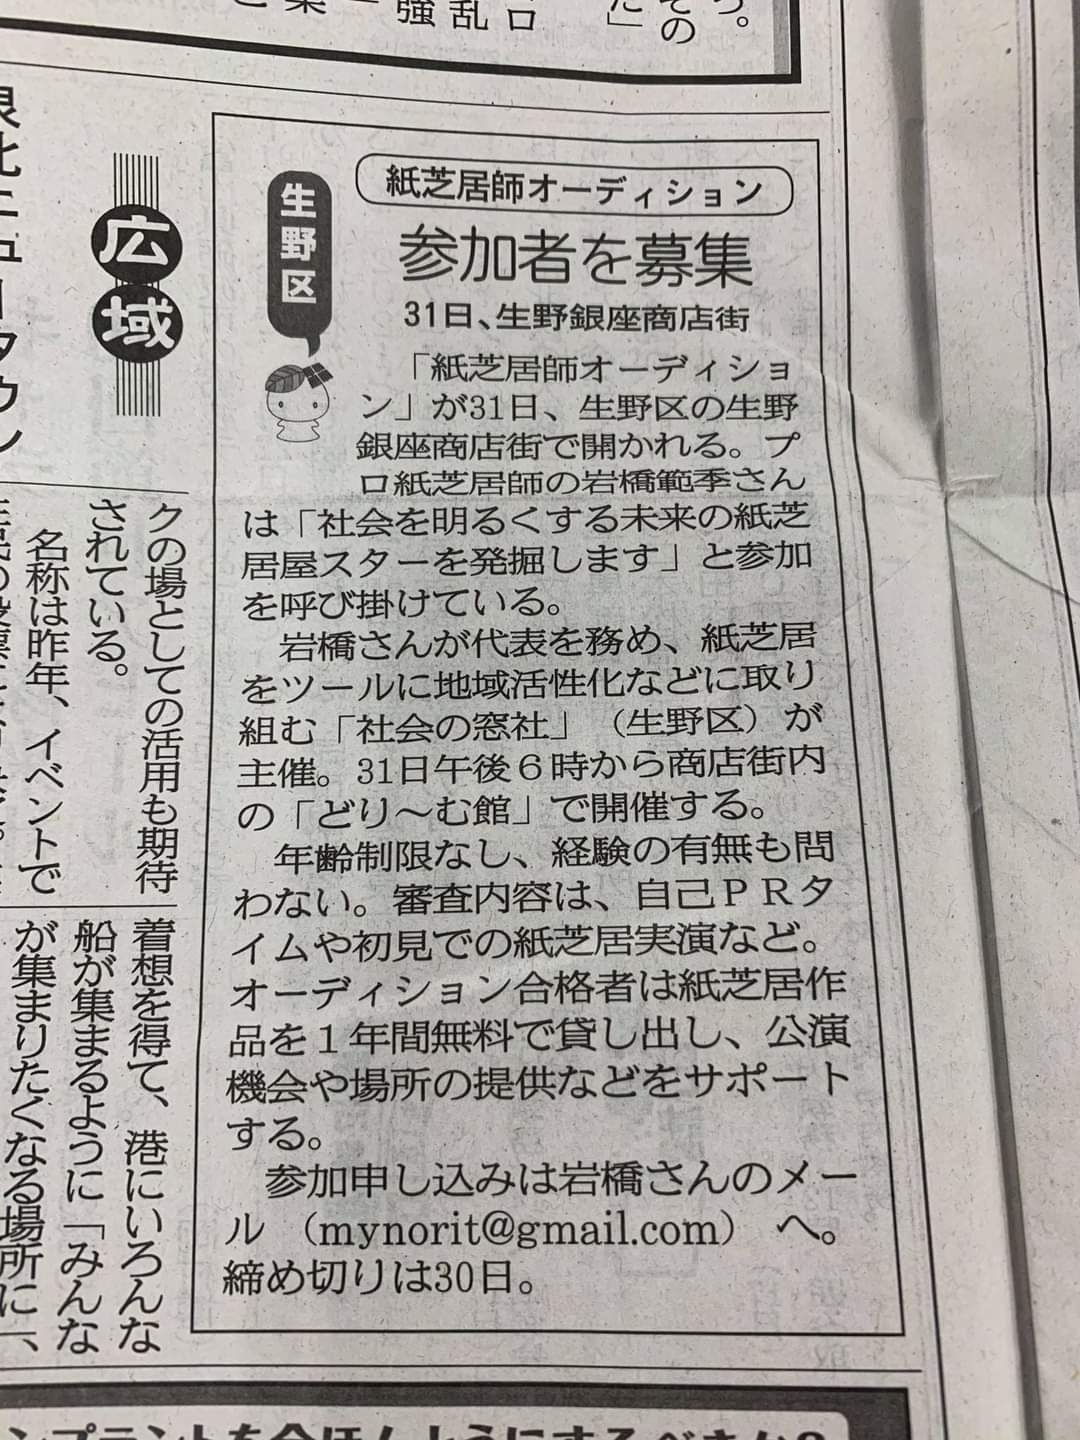 大阪日日新聞さん掲載